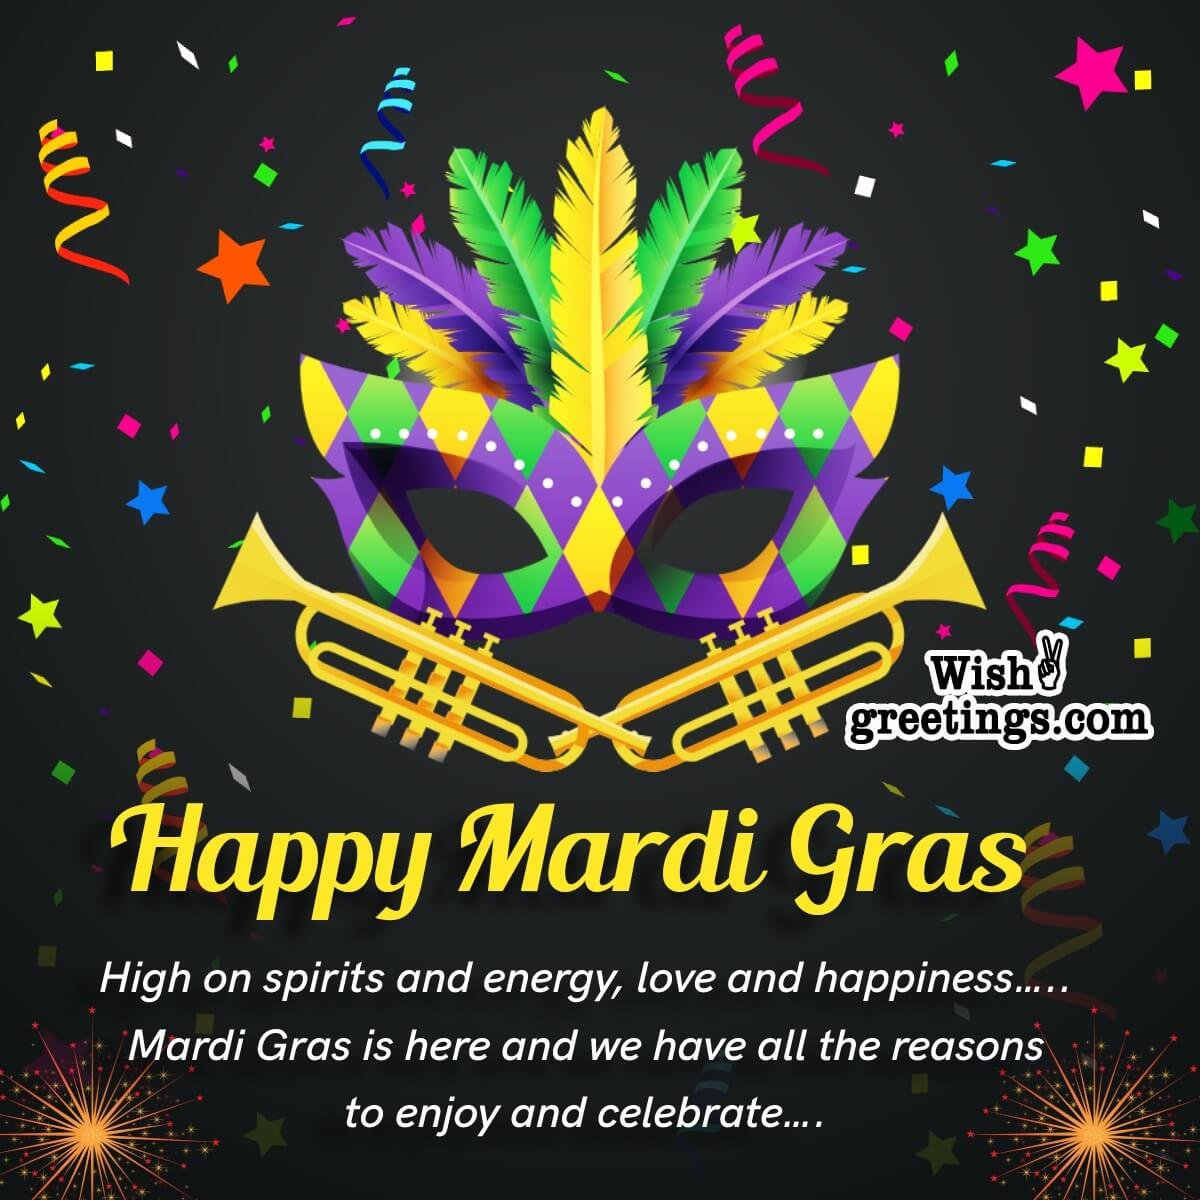 Happy Mardi Gras Message